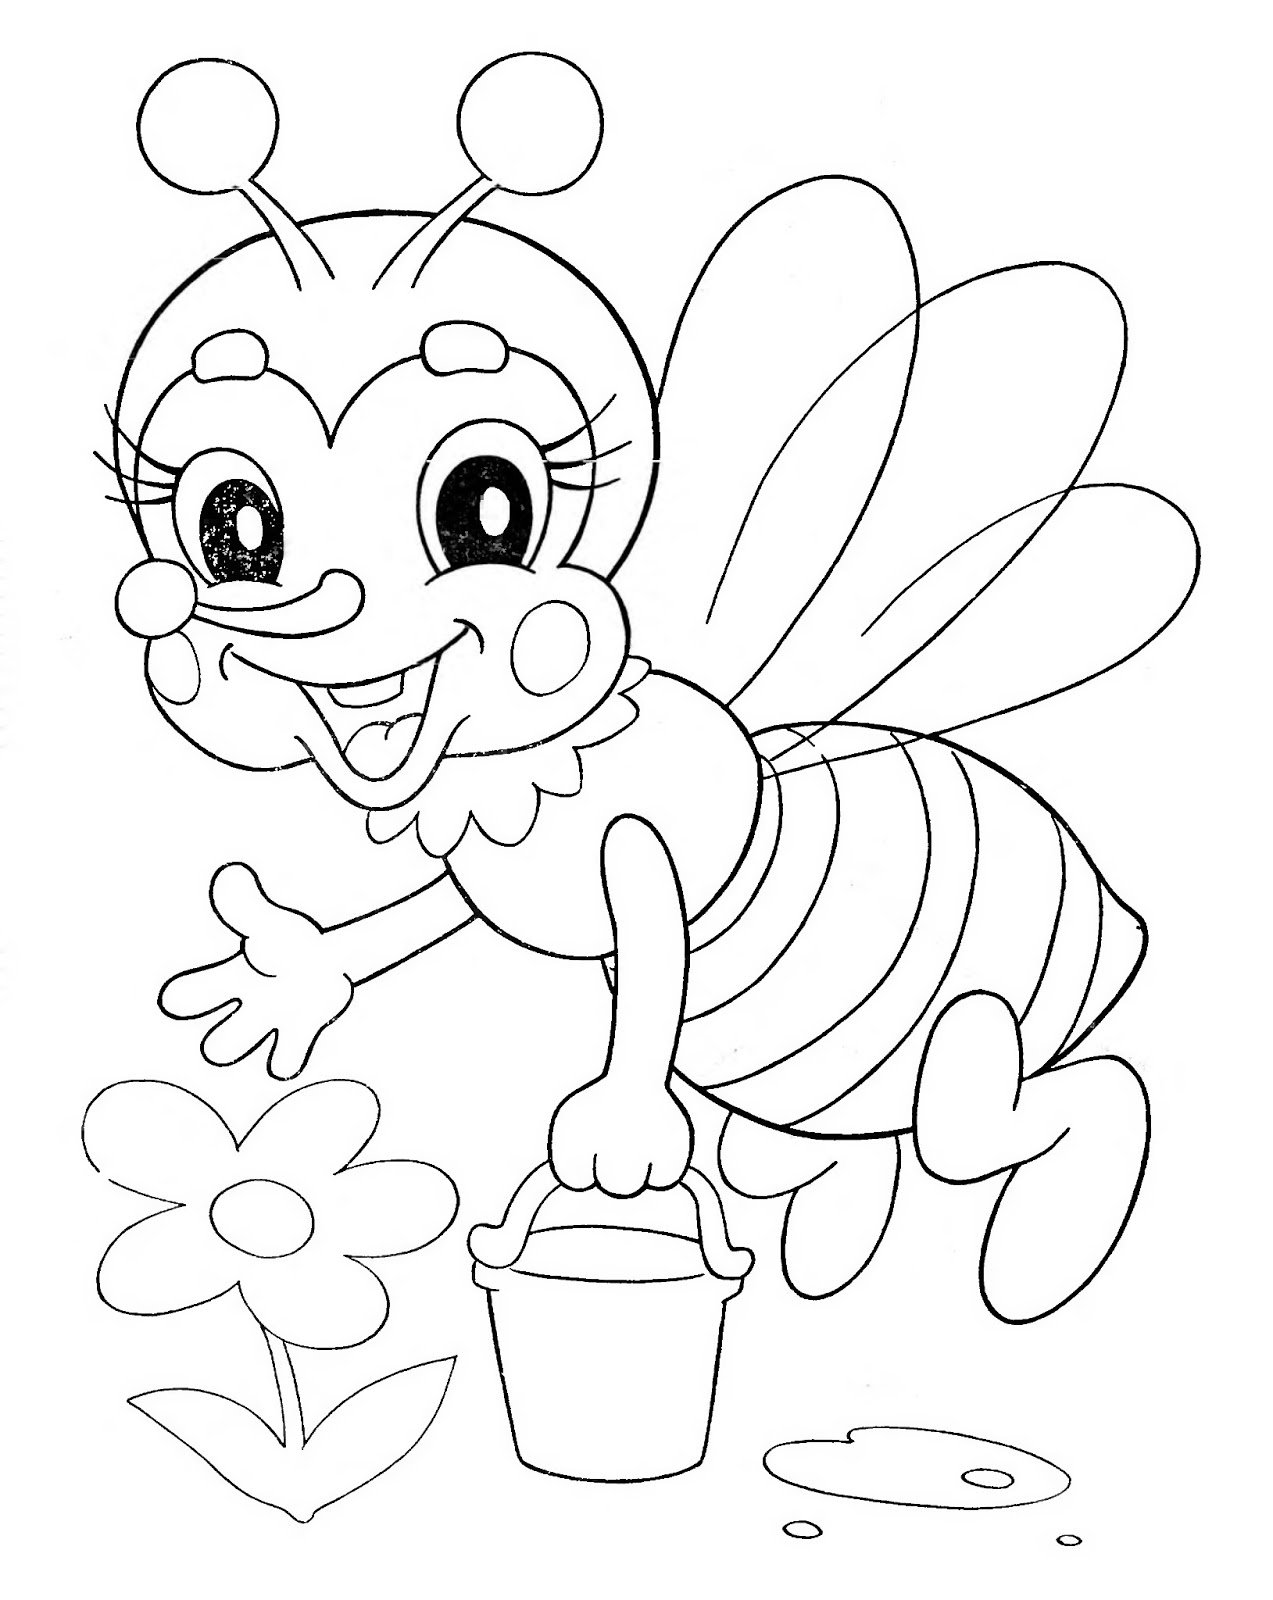 Пчелка раскраска распечатать. Пчела раскраска. Раскраска пчёлка для детей. Пчелка раскраска для малышей. Пчела раскраска для детей.